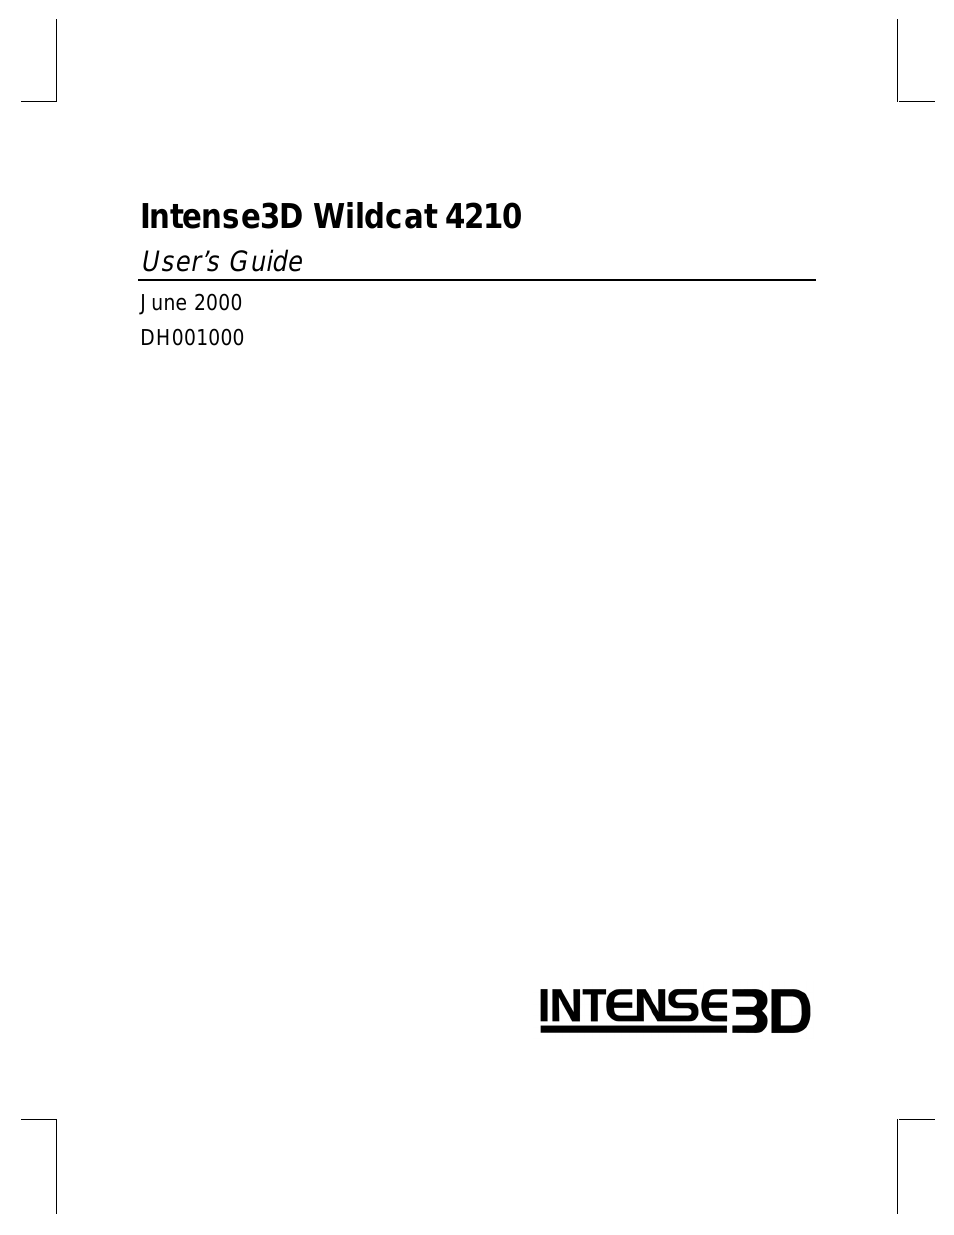 Wildcat 4210